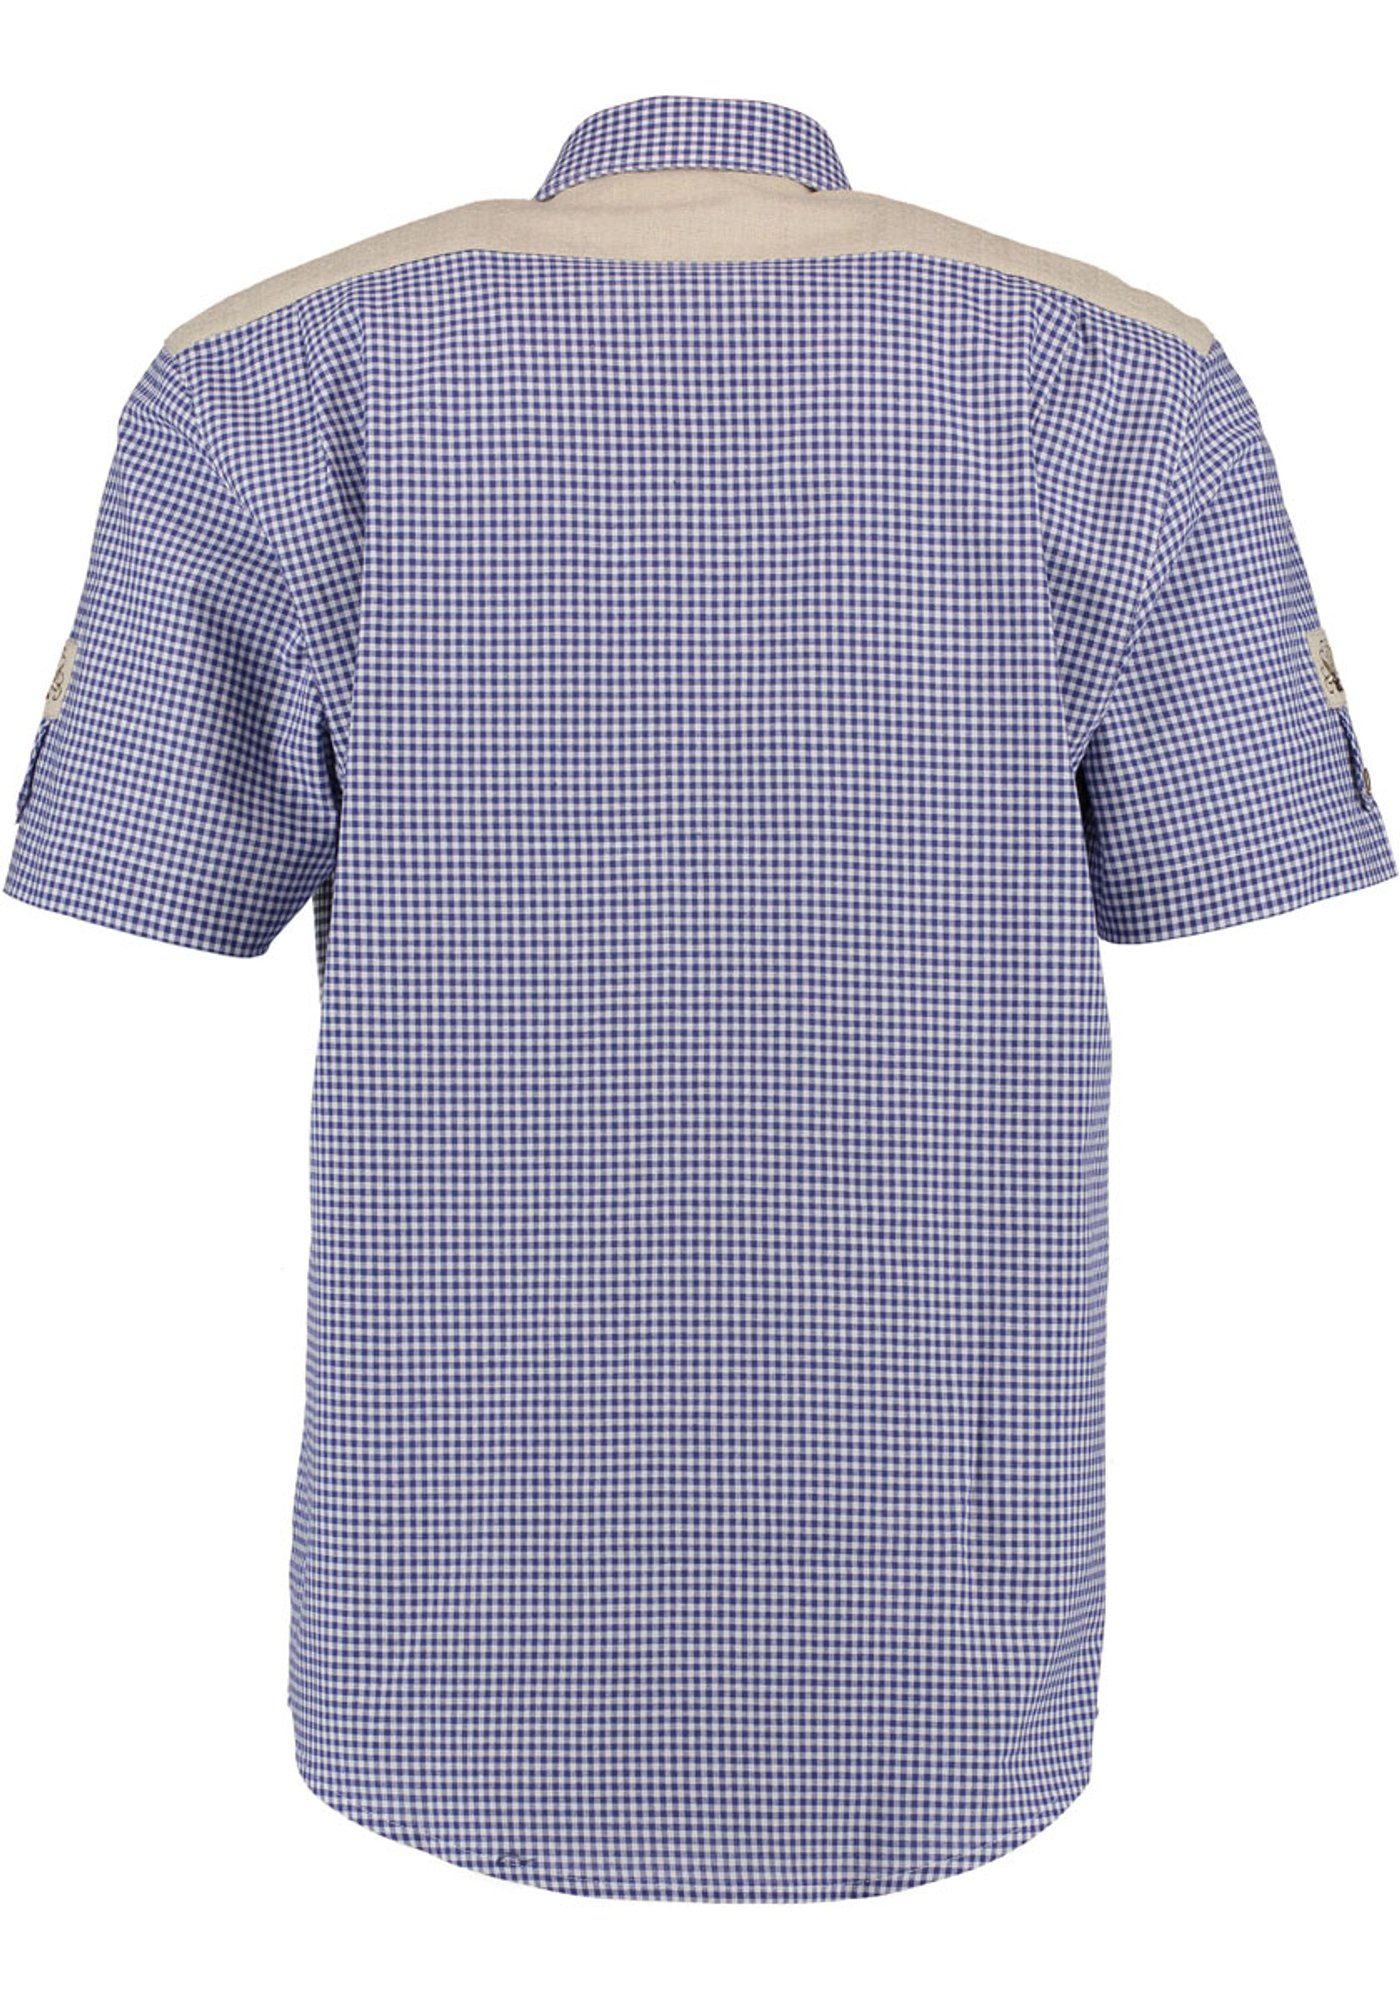 Gajesa Knopfleiste Trachtenhemd der Kurzarmhemd Edelweiß-Stickerei auf mit kornblau OS-Trachten